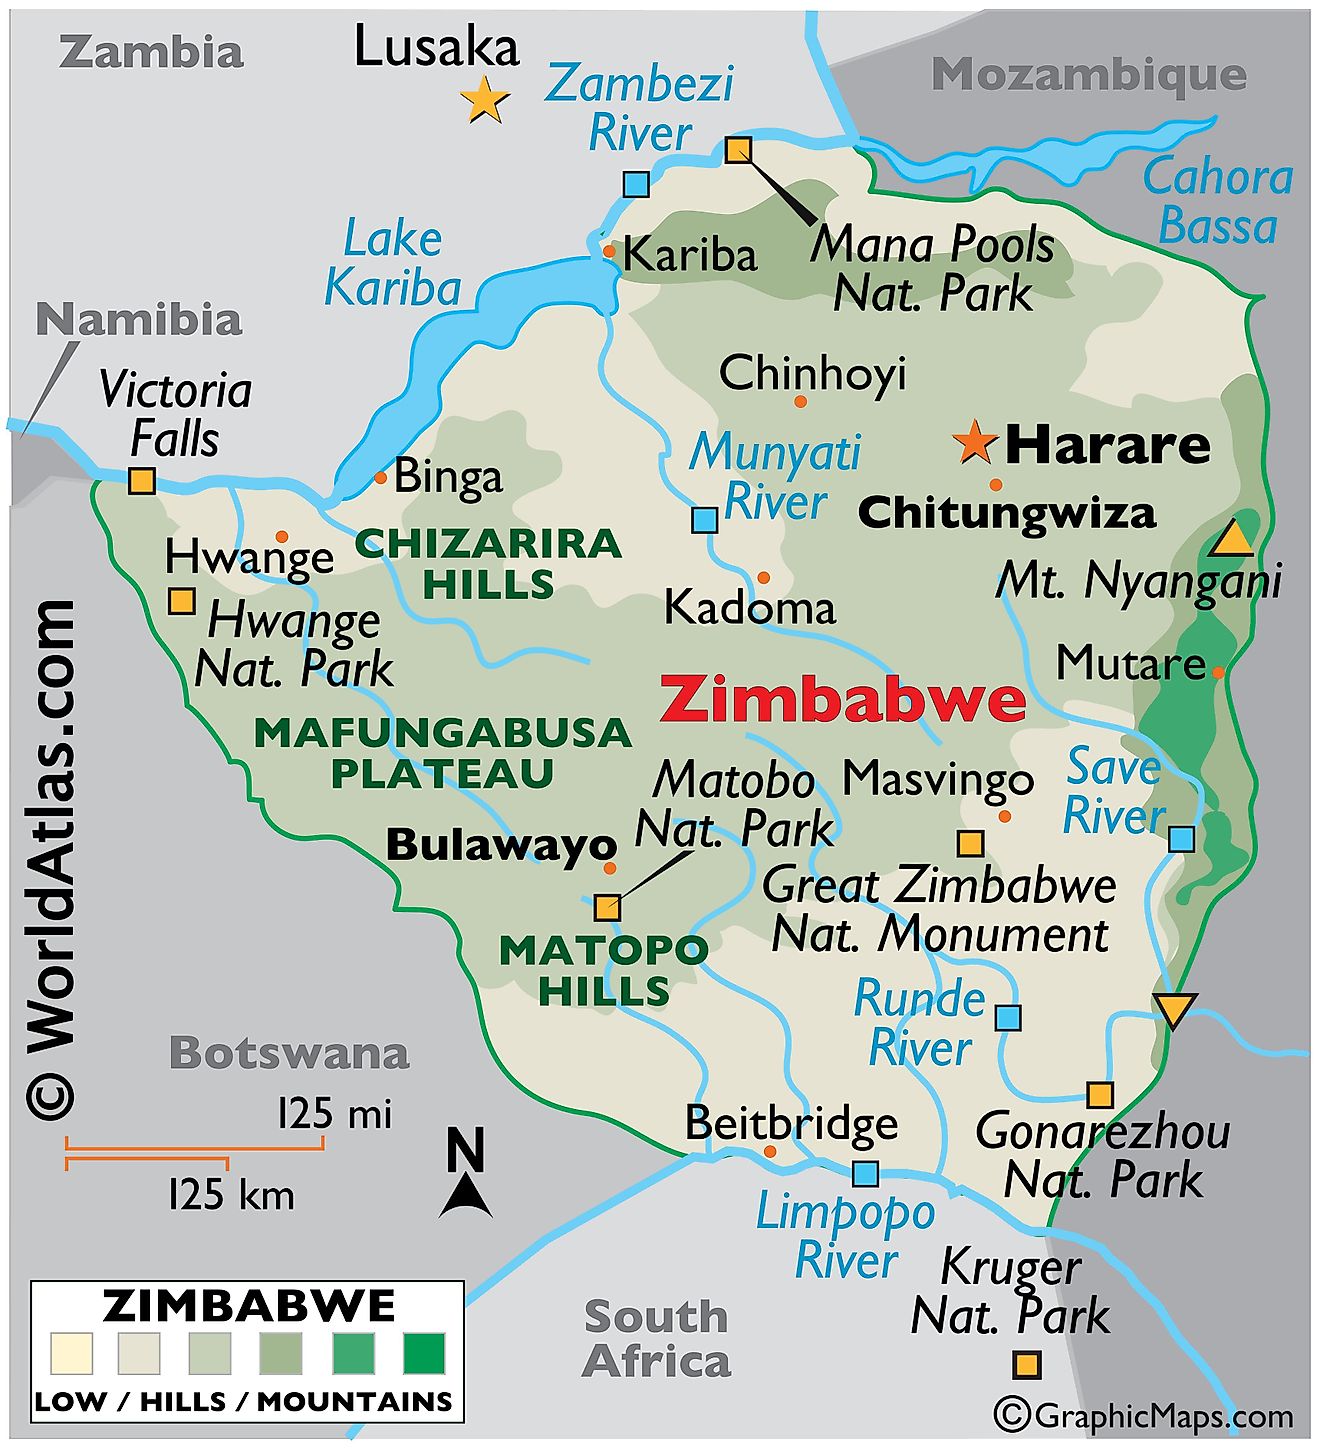 Mapa físico de Zimbabue que muestra las características físicas del país, incluidas cadenas montañosas, ríos, lagos principales e importantes áreas protegidas.